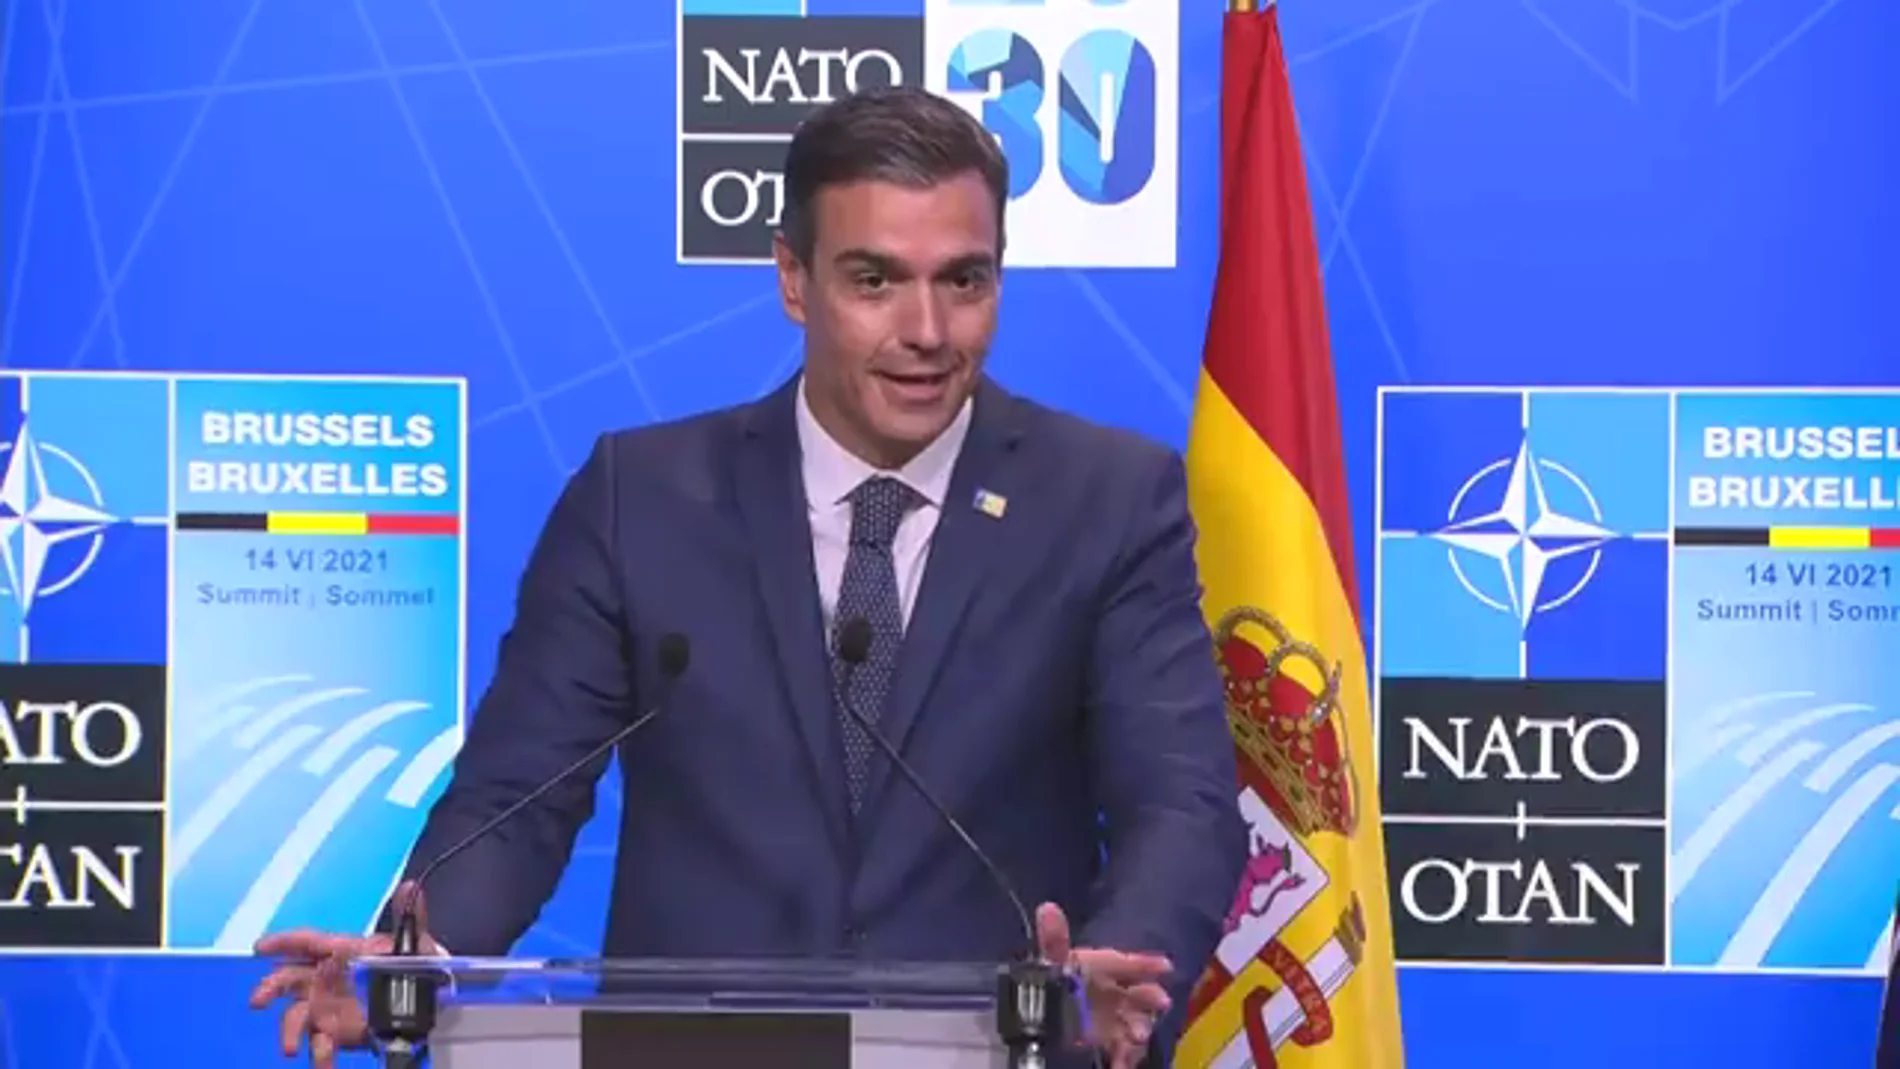 Rueda de prensa de Pedro Sánchez desde la cumbre de la OTAN en Bruselas, vídeo en directo